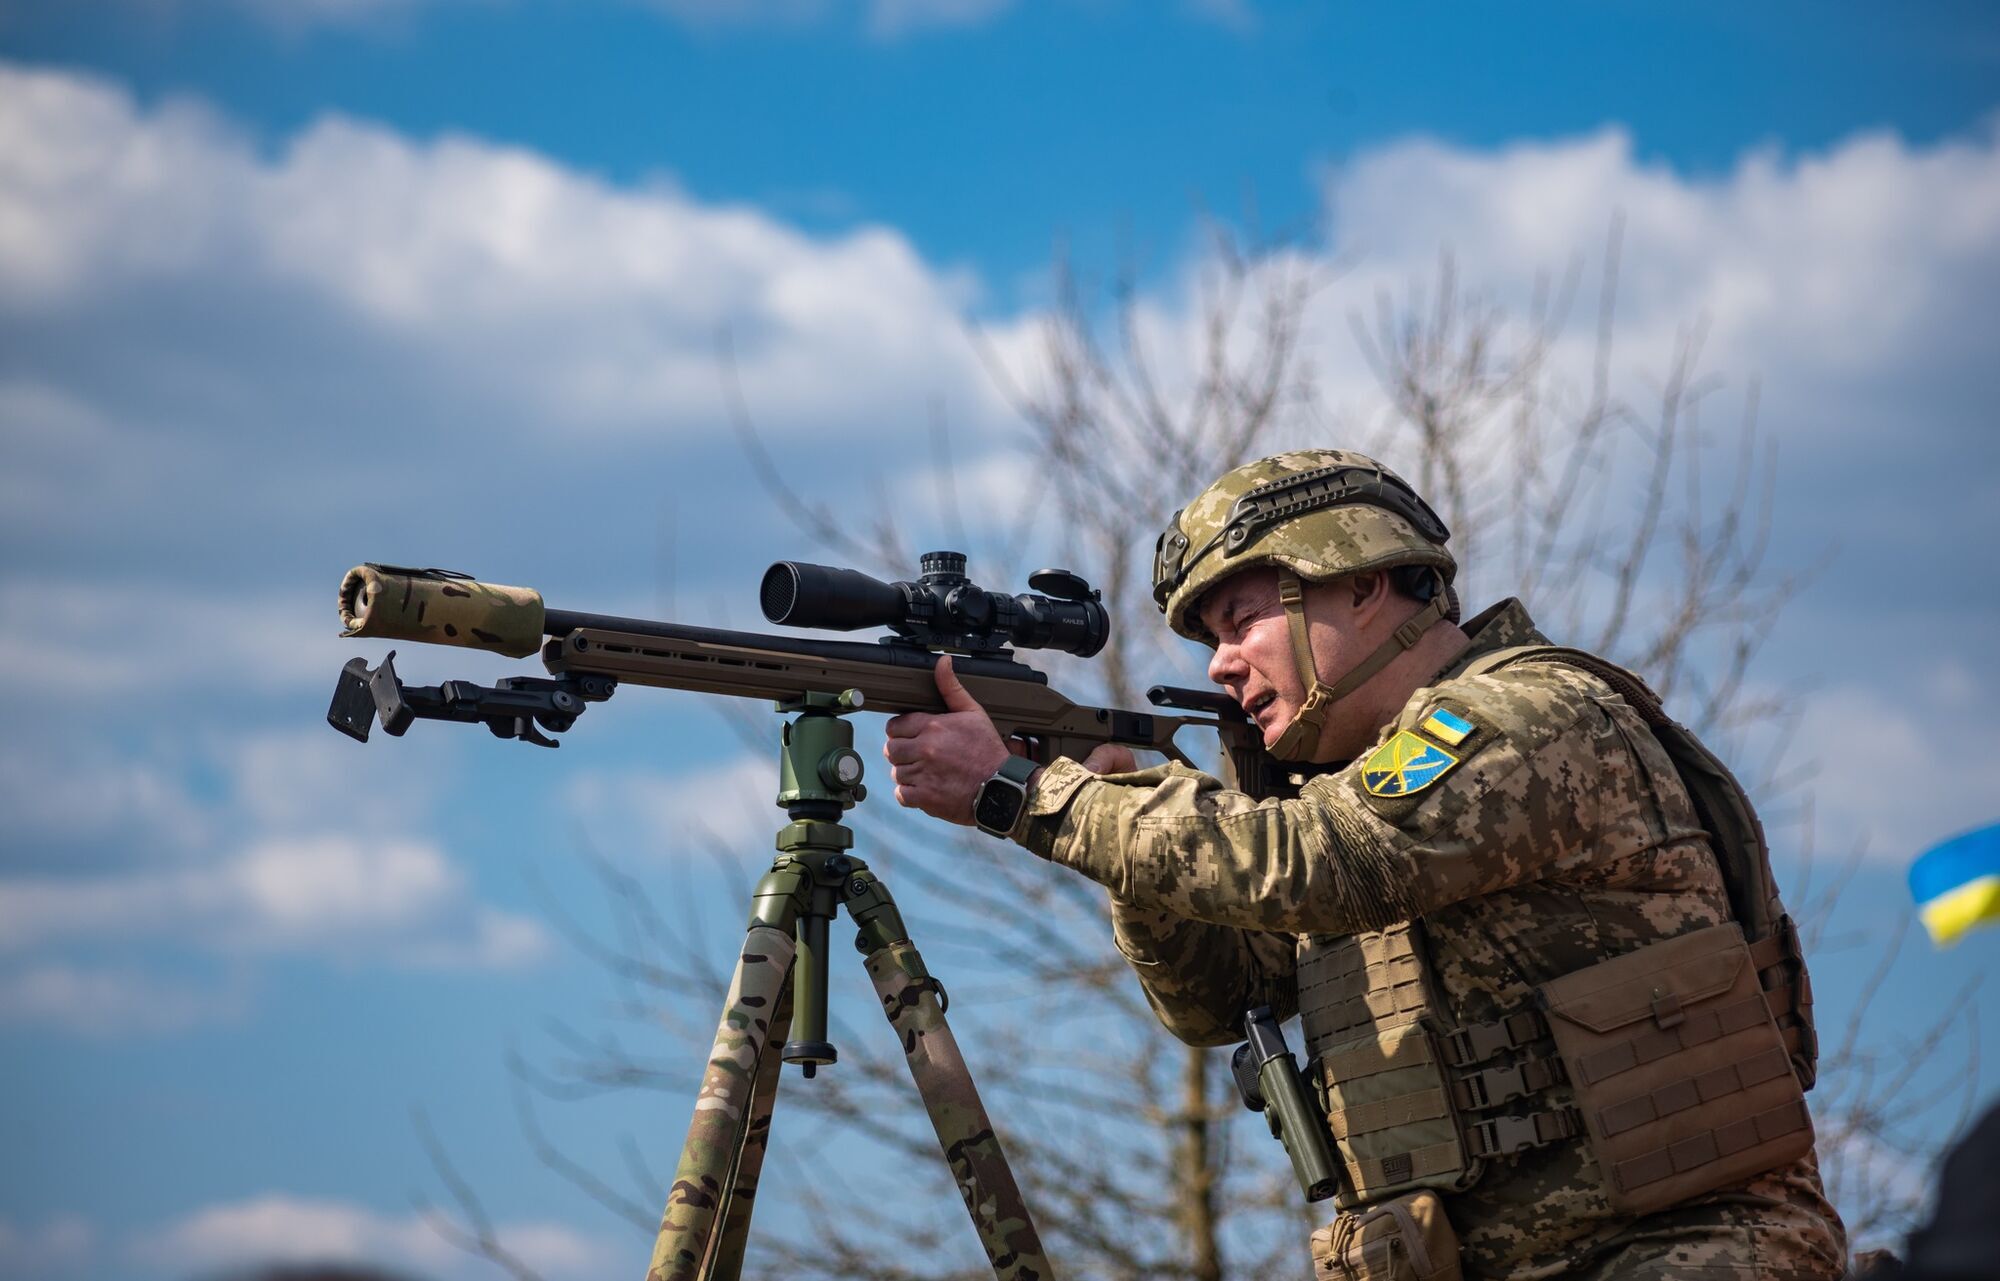 Наев рассказал, сколько войск РФ сосредоточила у северной границы Украины: есть ли риск вторжения